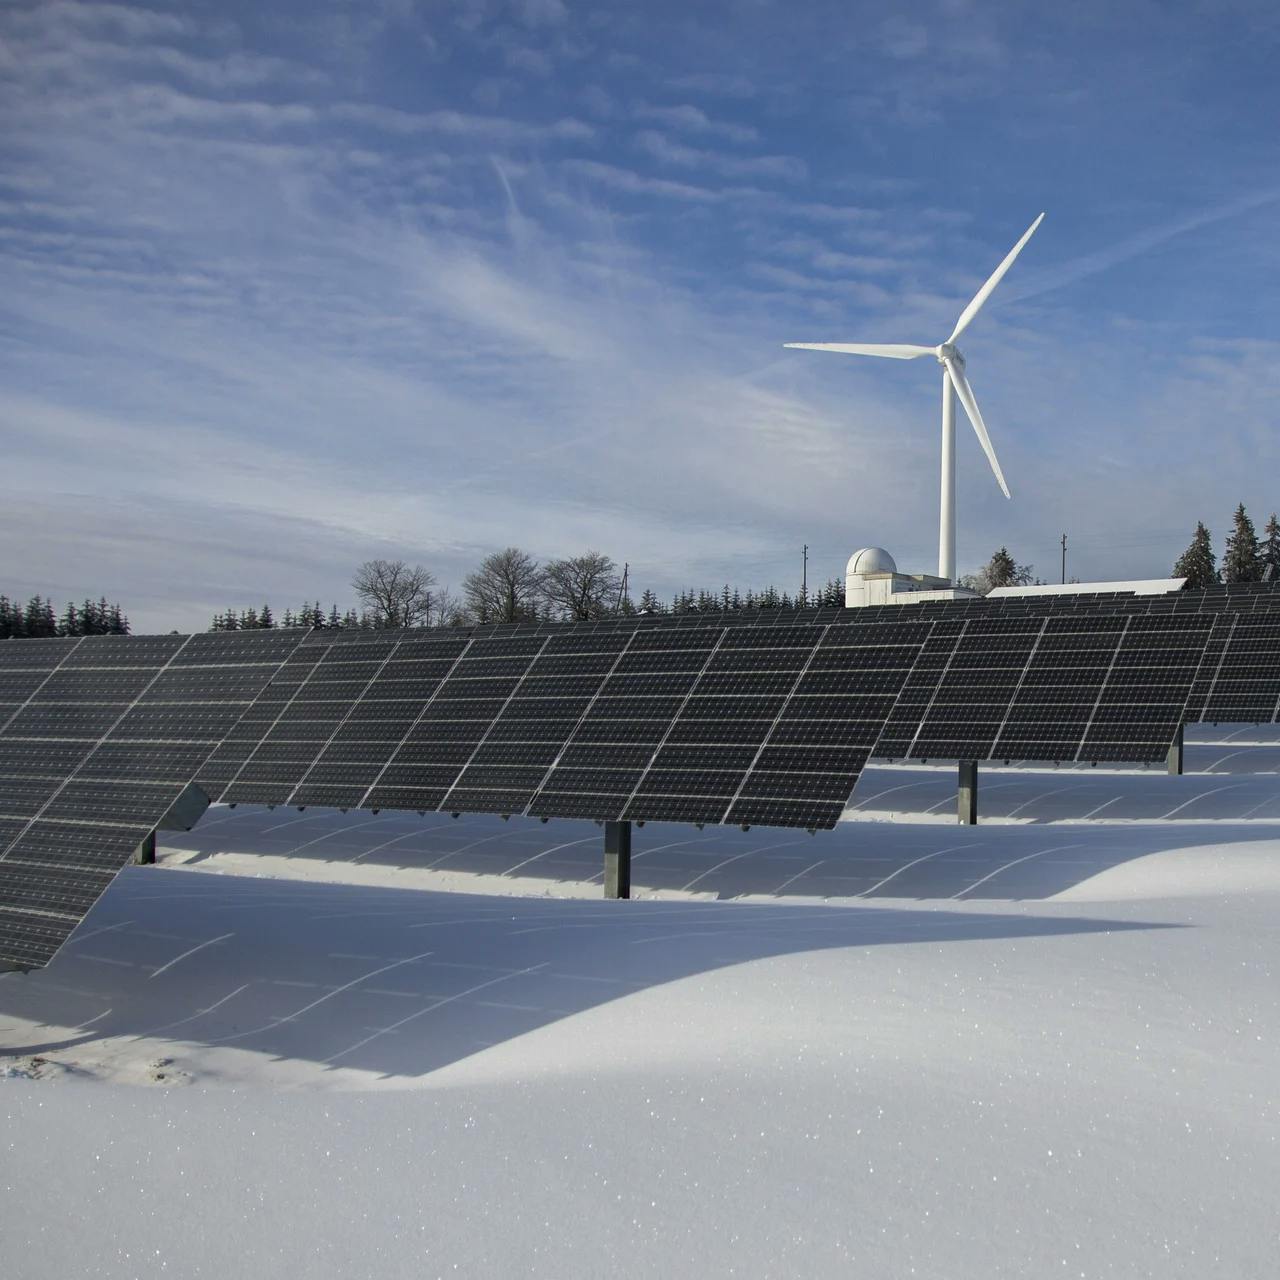 Photovoltaik-Anlage im Schnee, dahinter steht ein Windrad.